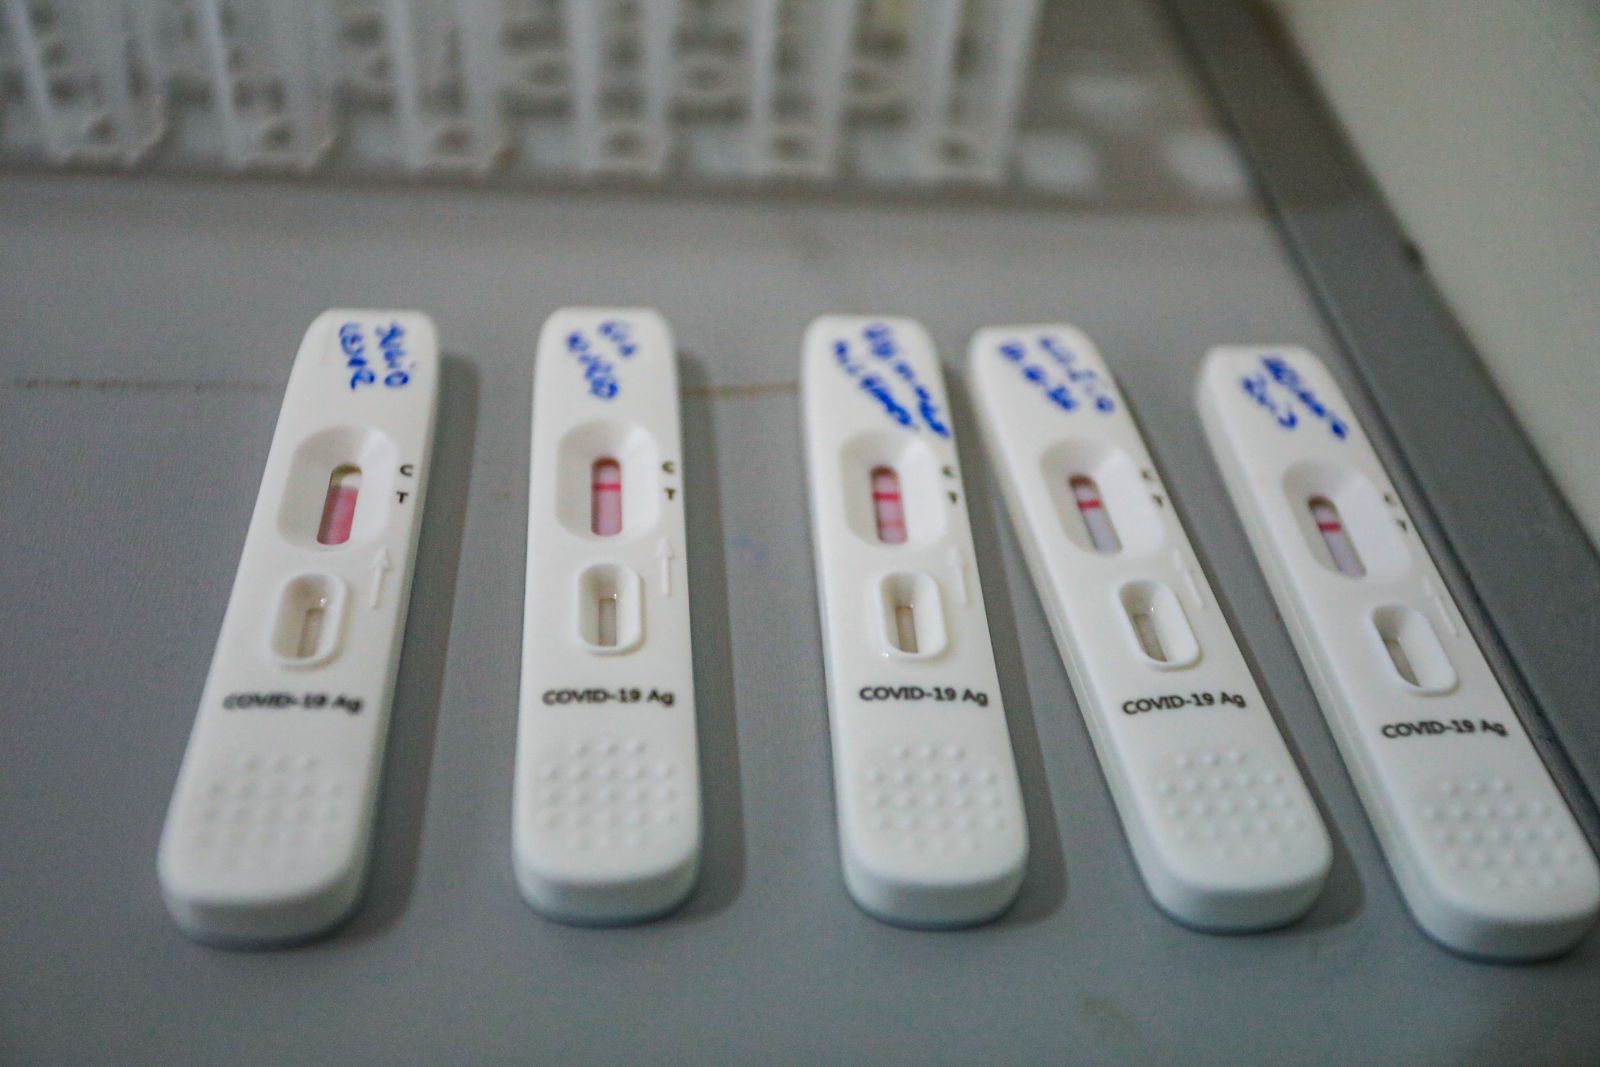 PANDEMIA: Capital se mobiliza para testes e vacinação contra a covid-19 no sábado (22)